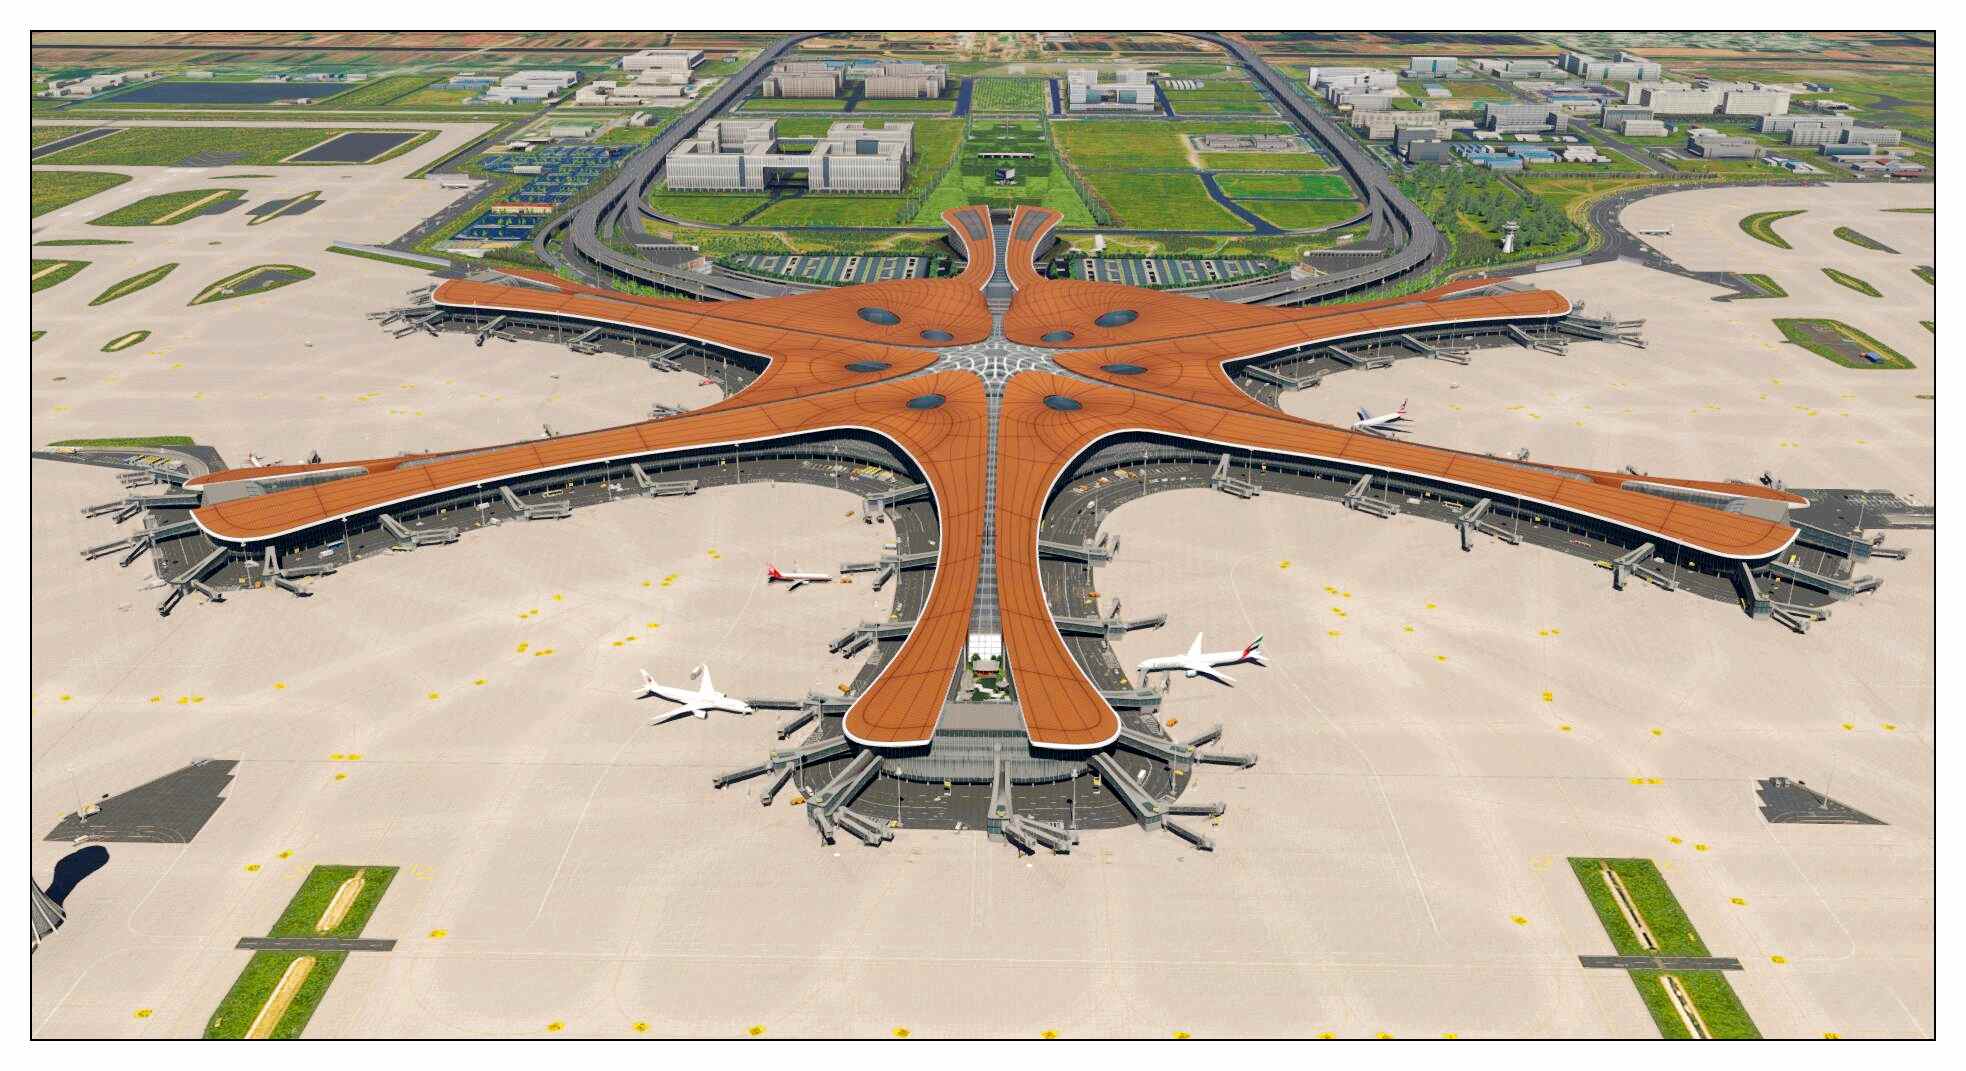 【X-Plane】ZBAD北京大兴国际机场-正式发布-9649 